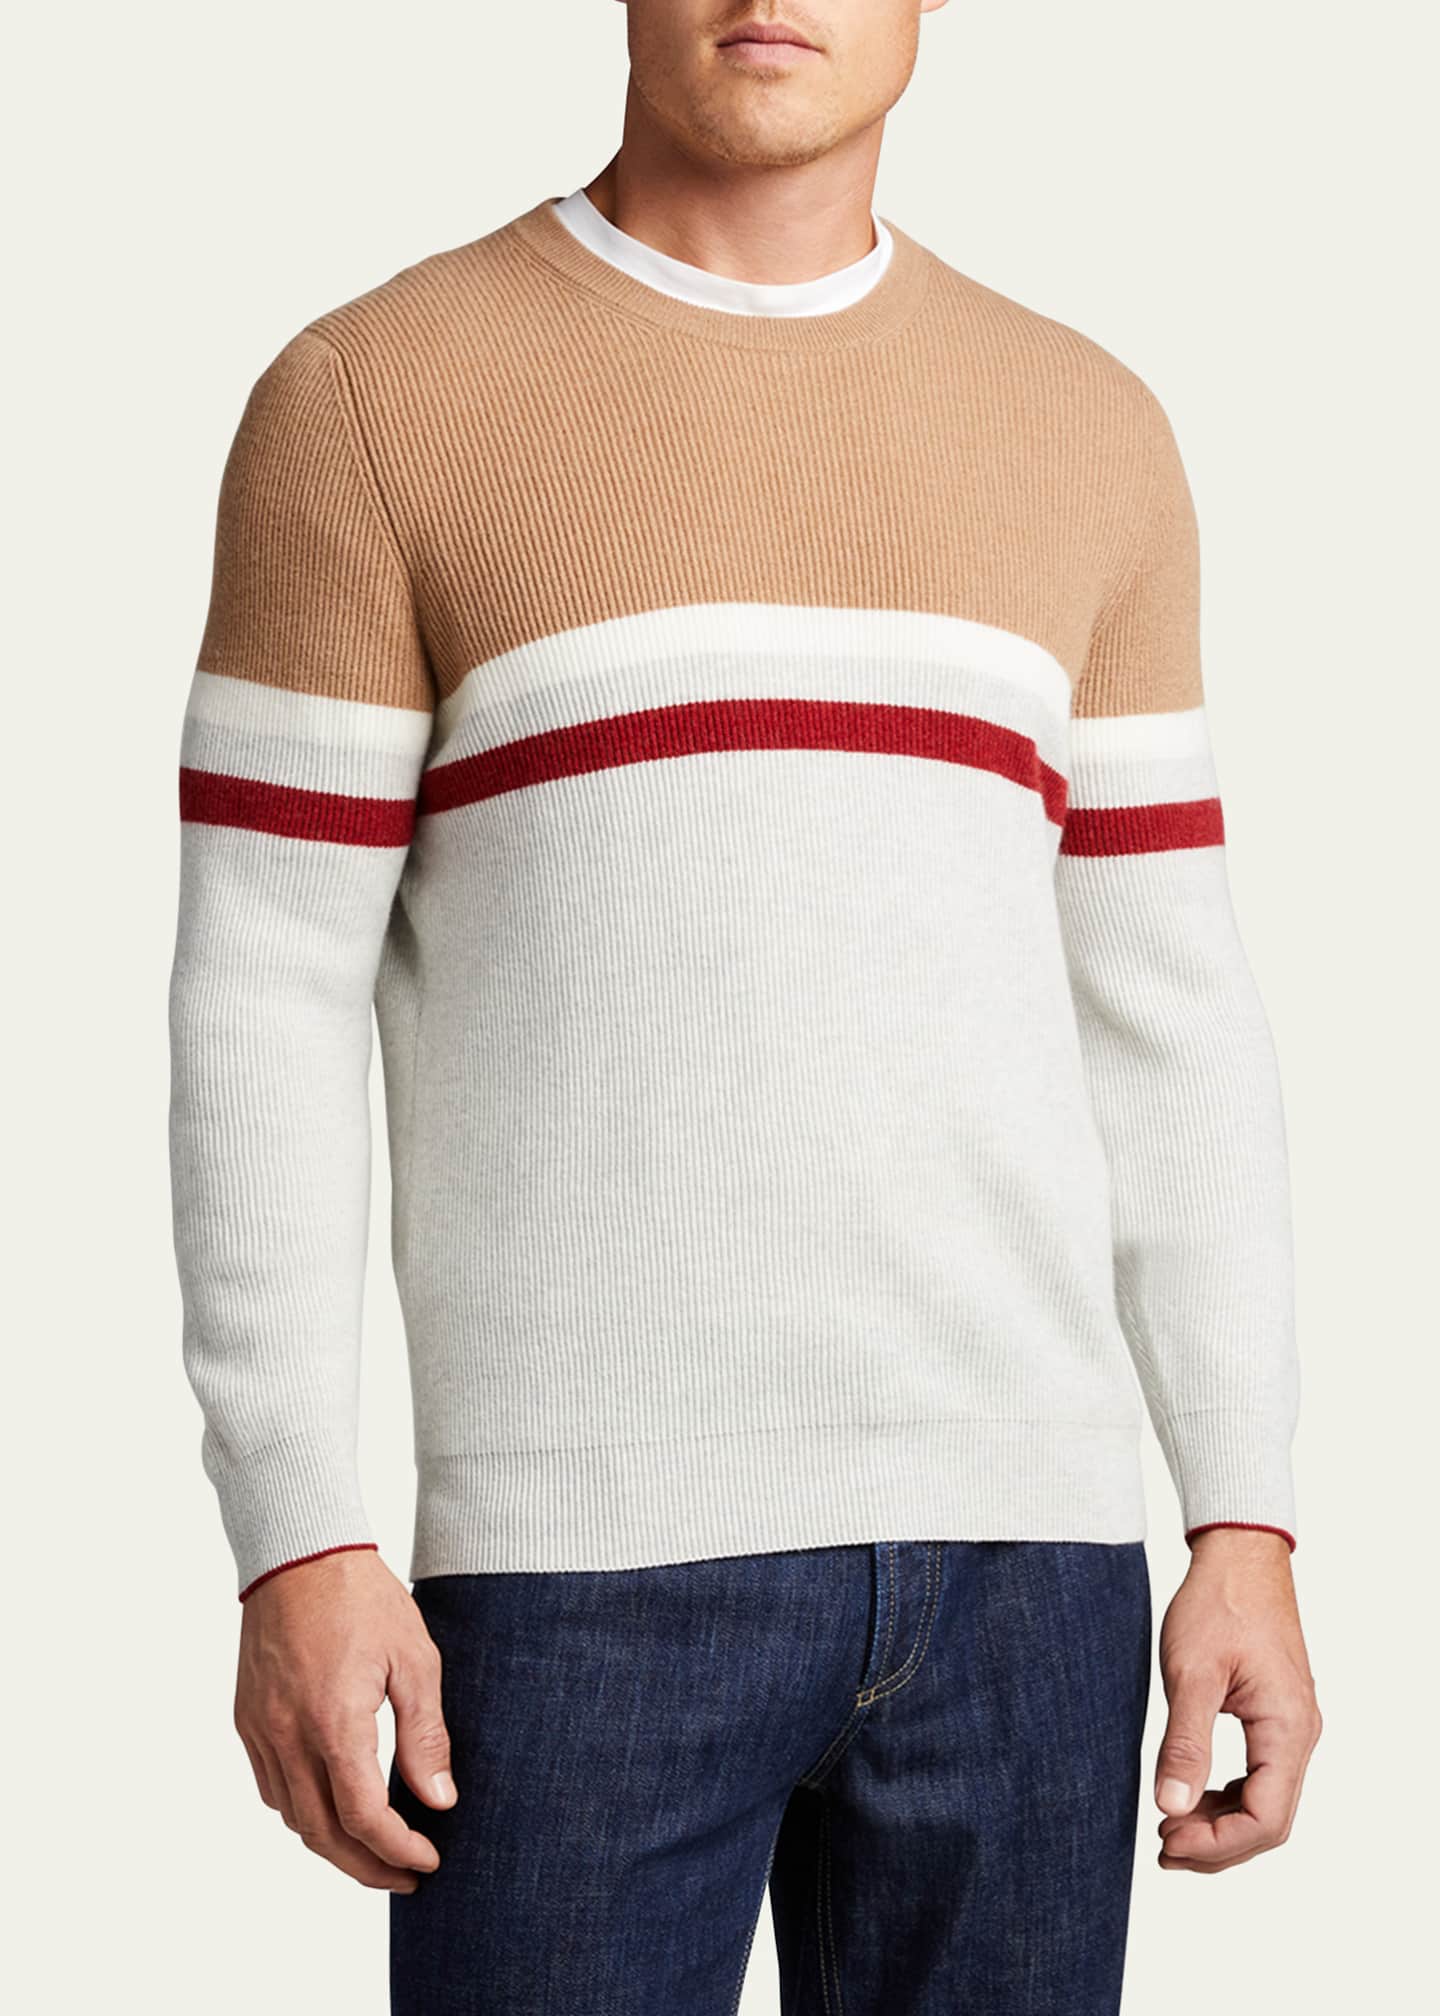 BRUNELLO CUCINELLI Striped Ribbed Cashmere Sweater for Men